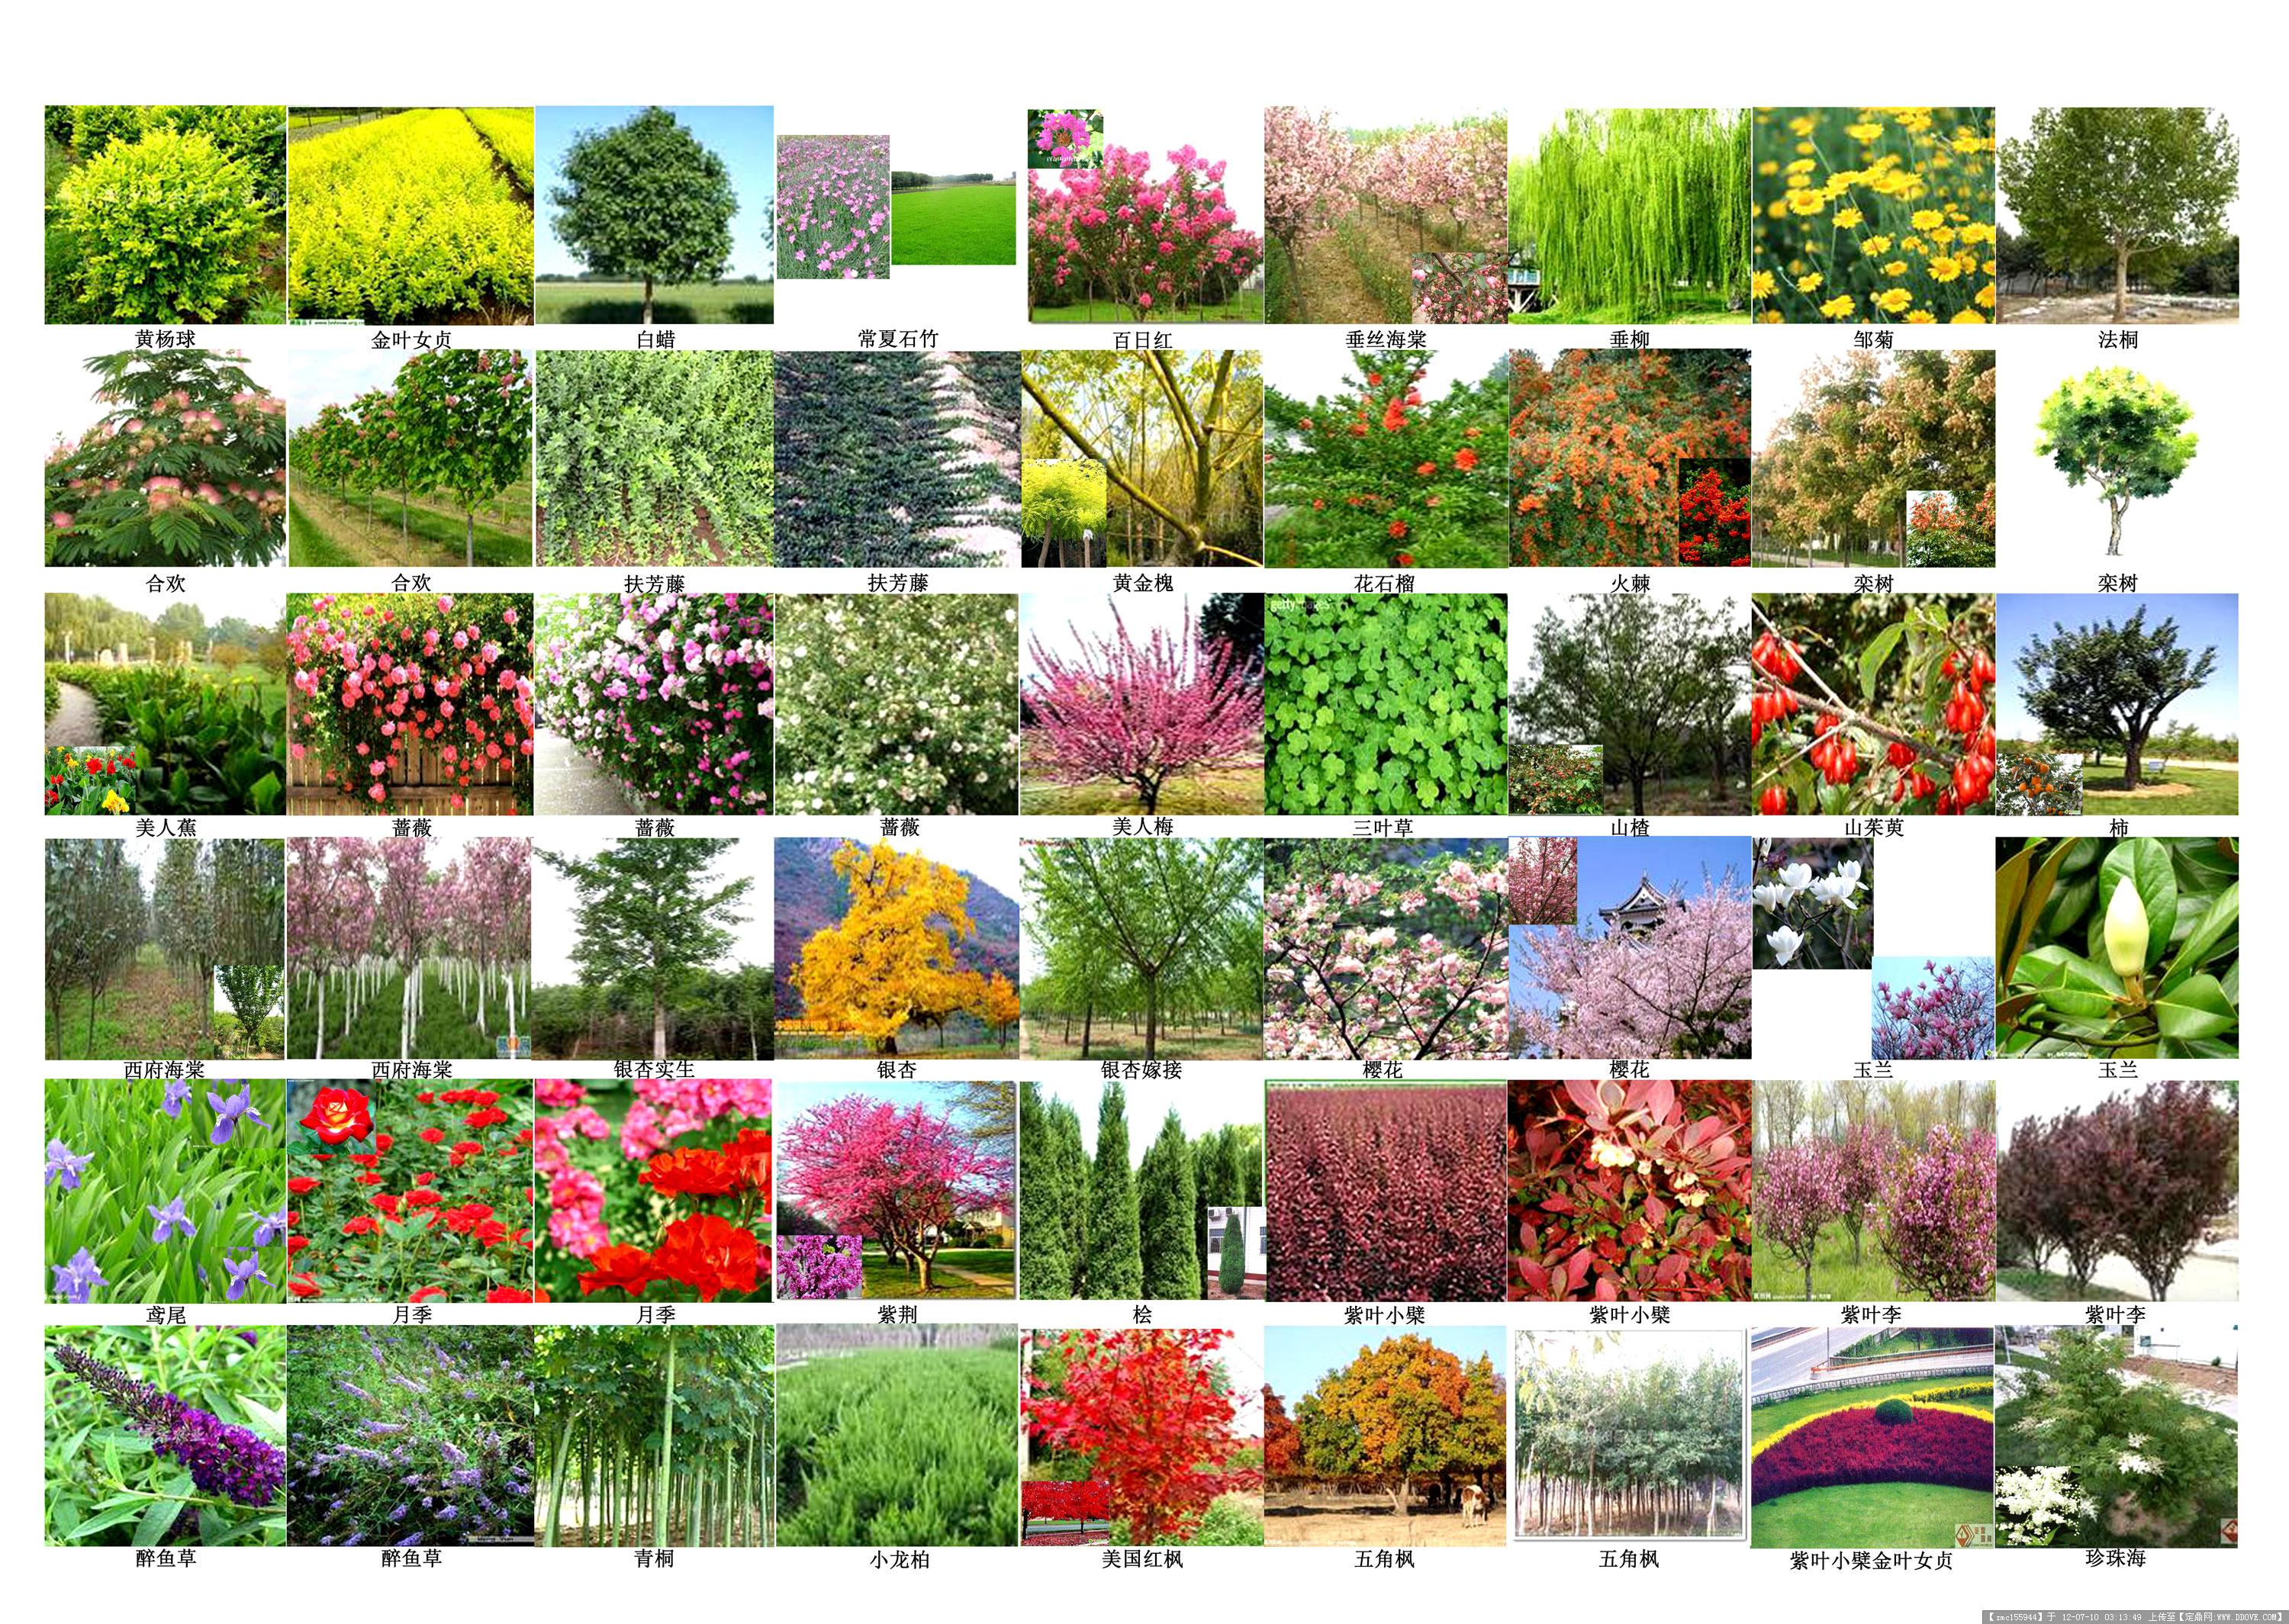 常见树木图片的图片浏览,园林节点照片,植物,园林景观设计施工图纸资料下载_定鼎园林